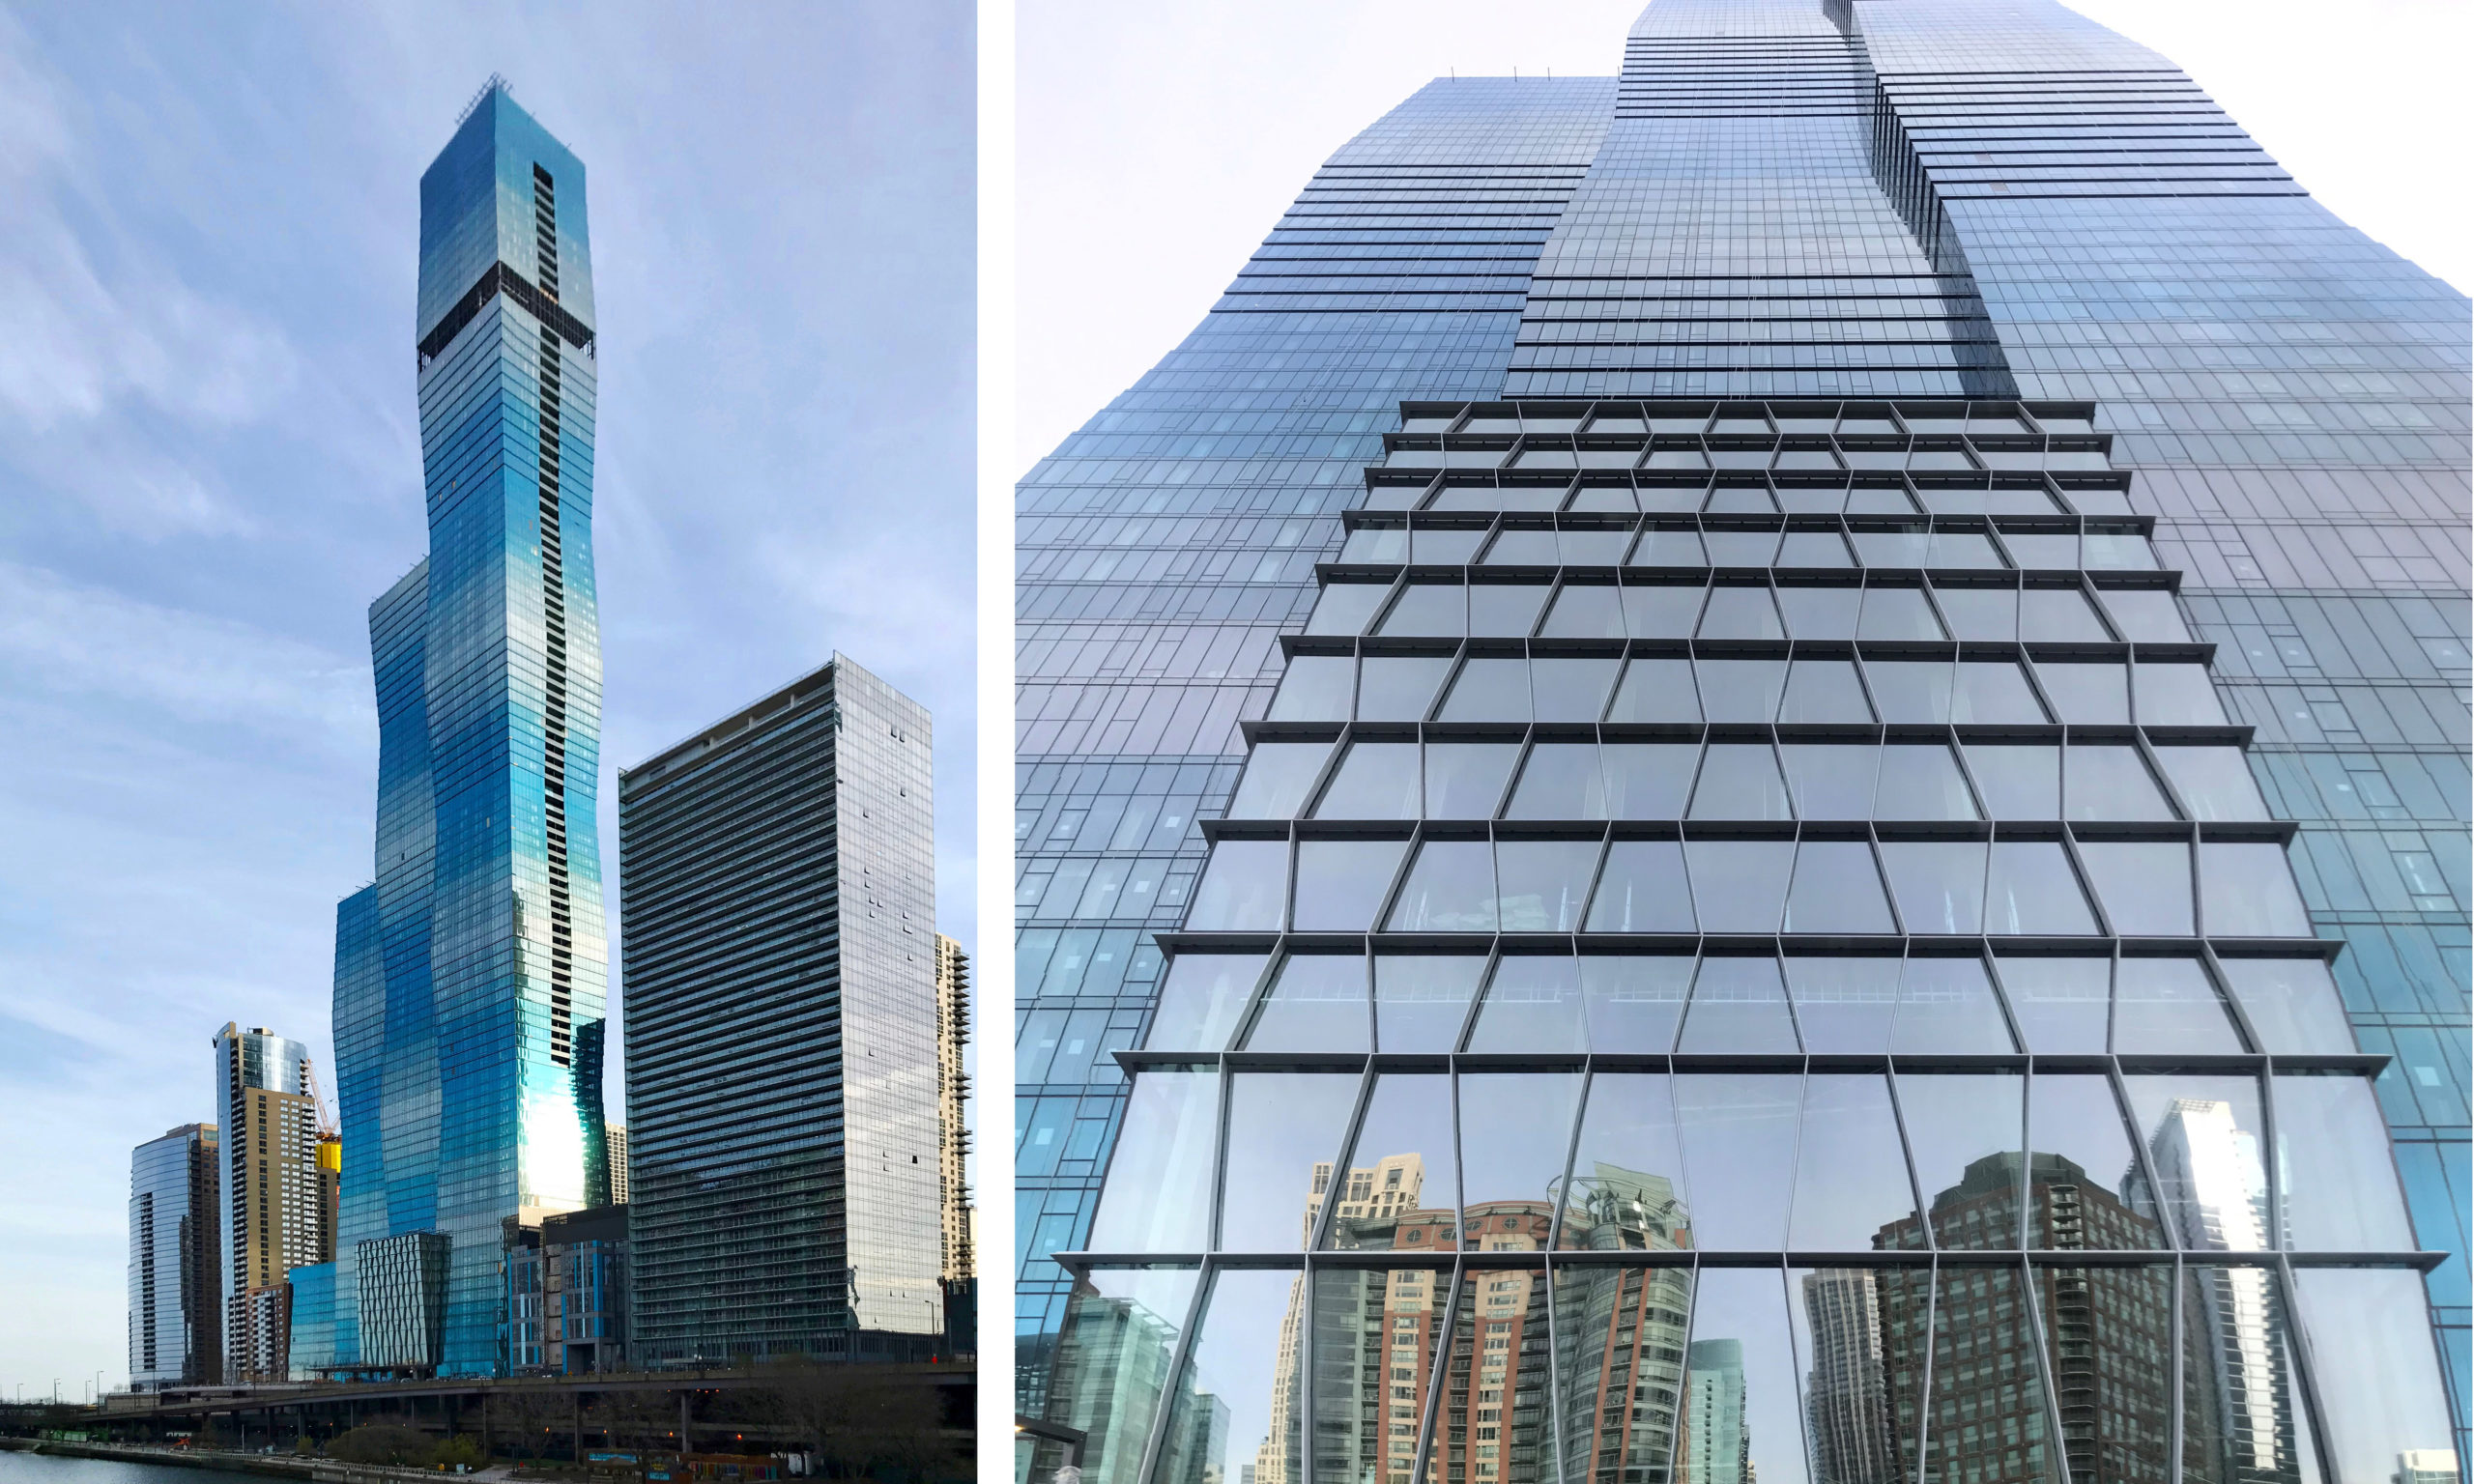 Vista Tower rebranded as The St. Regis Chicago – REJournals